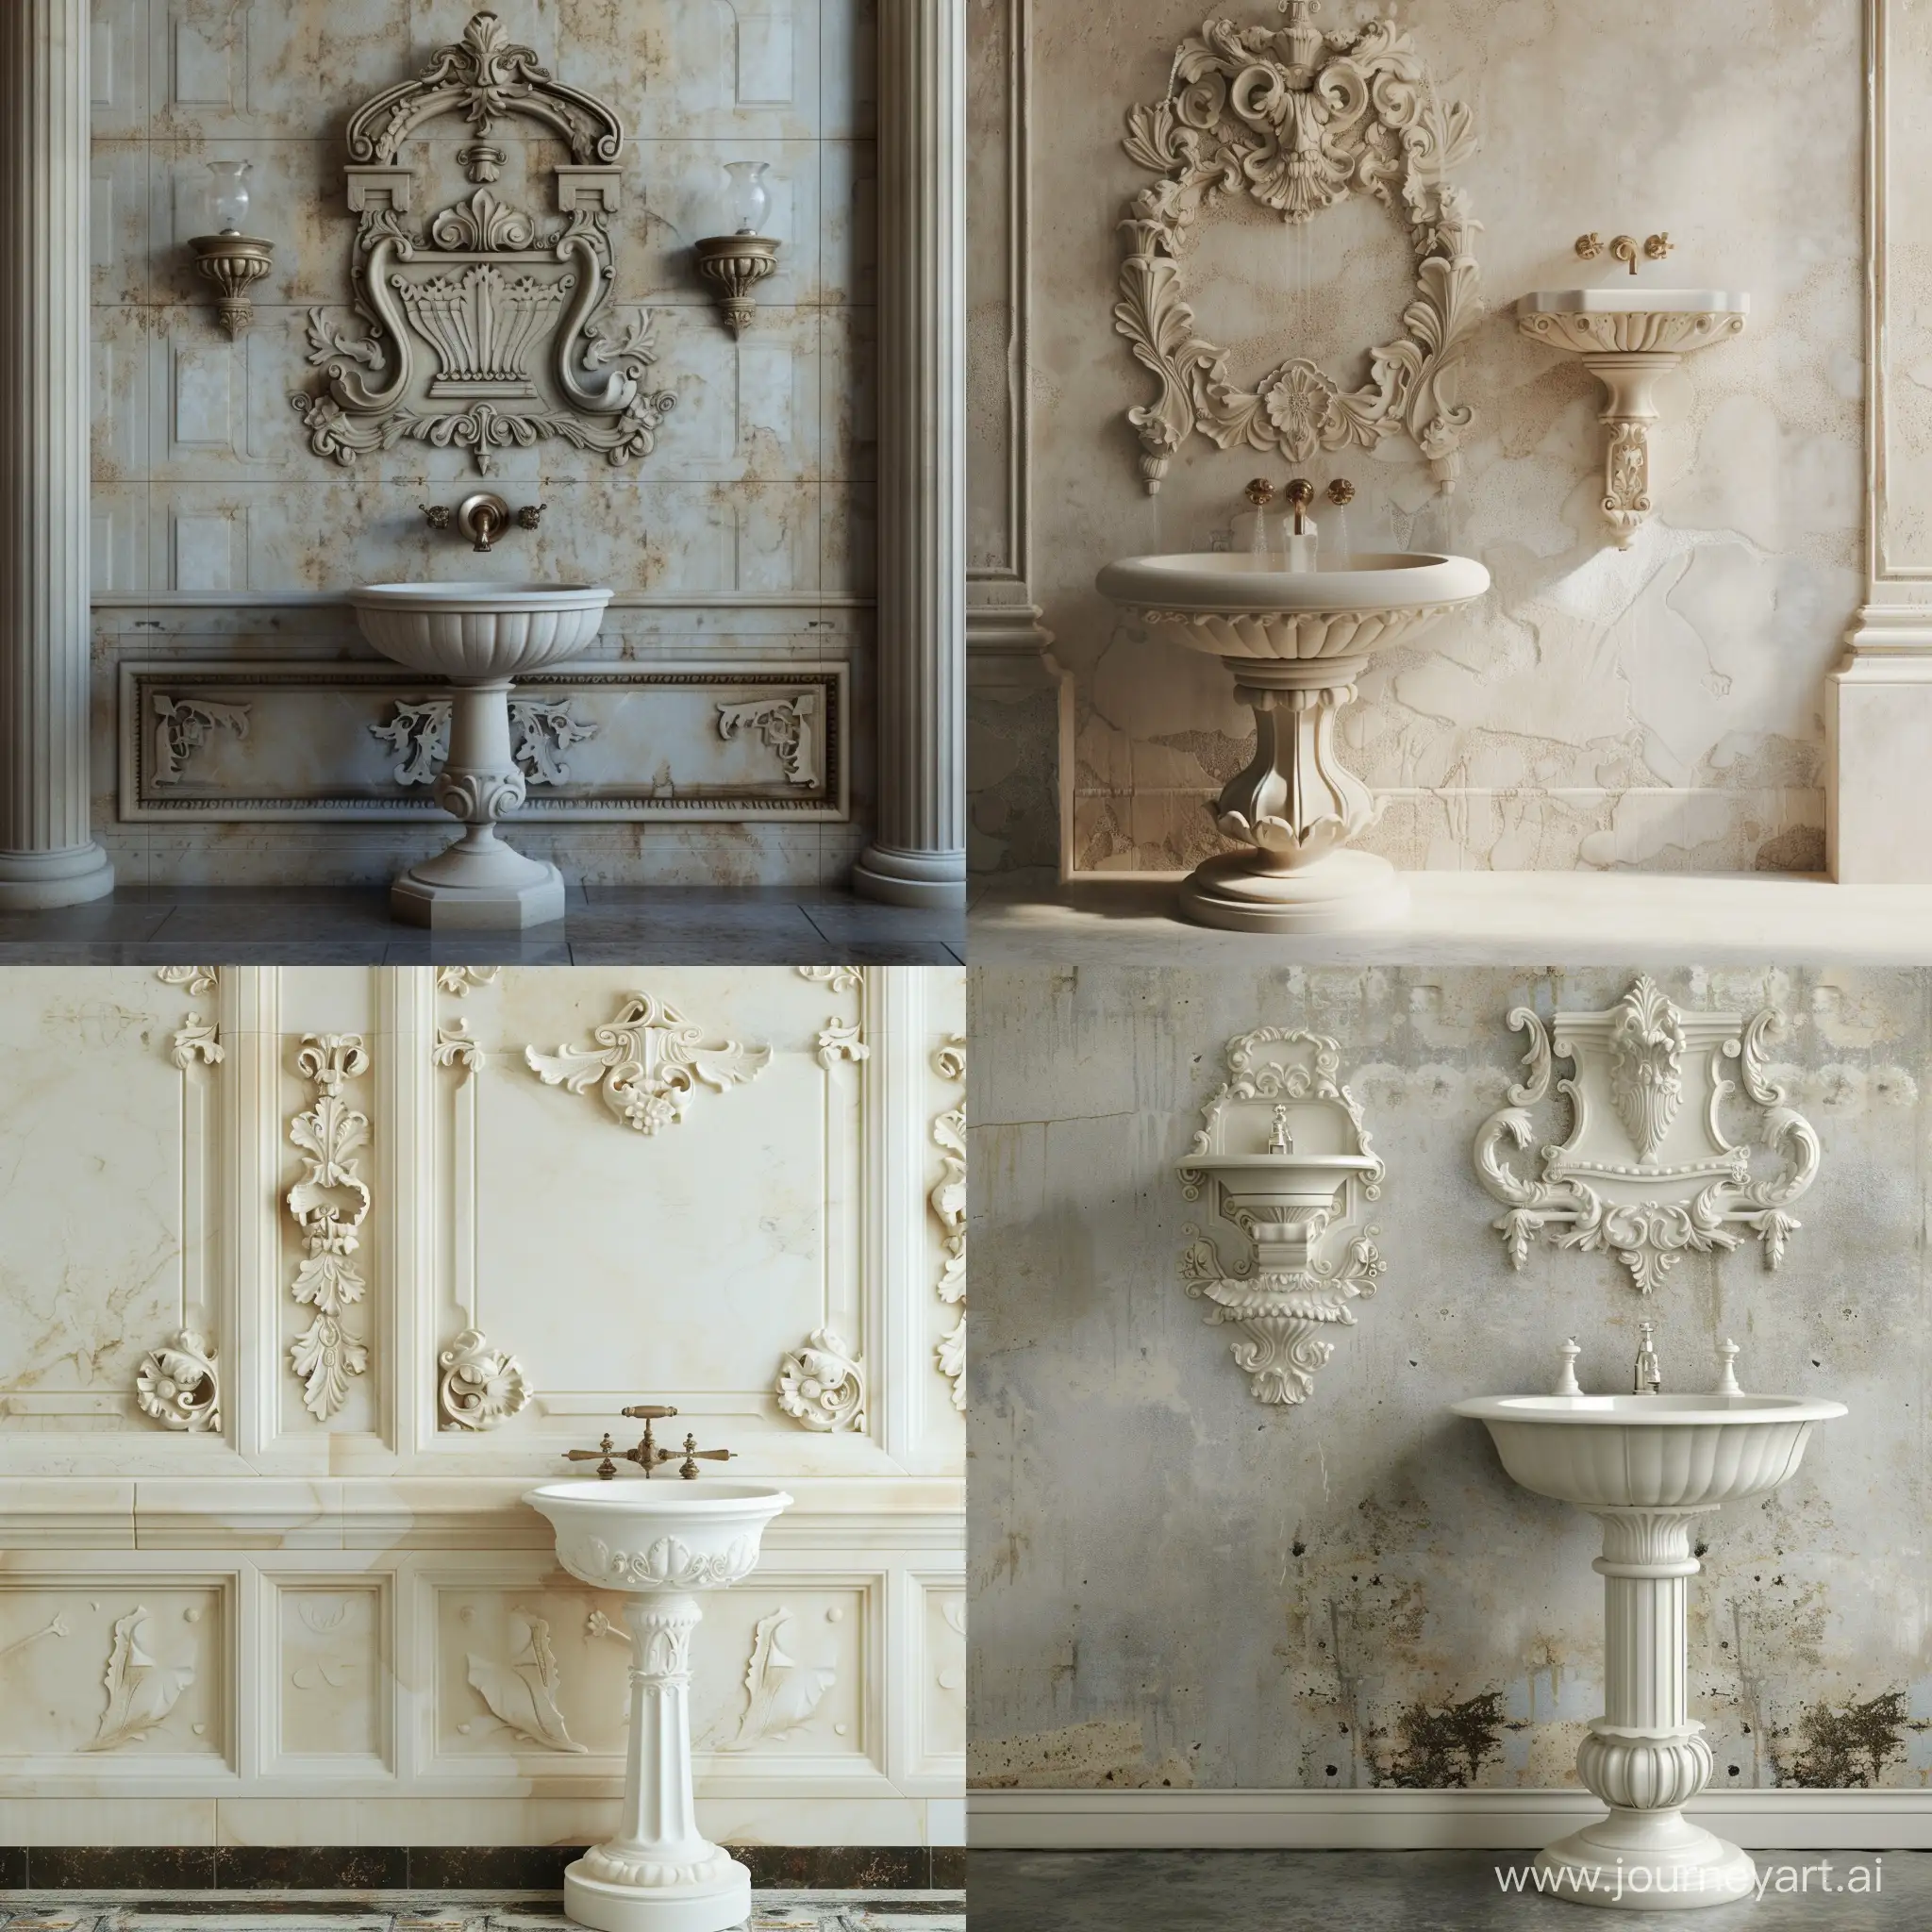 barok mimariisinde duvarda ayaklı lavabosu olan çeşme